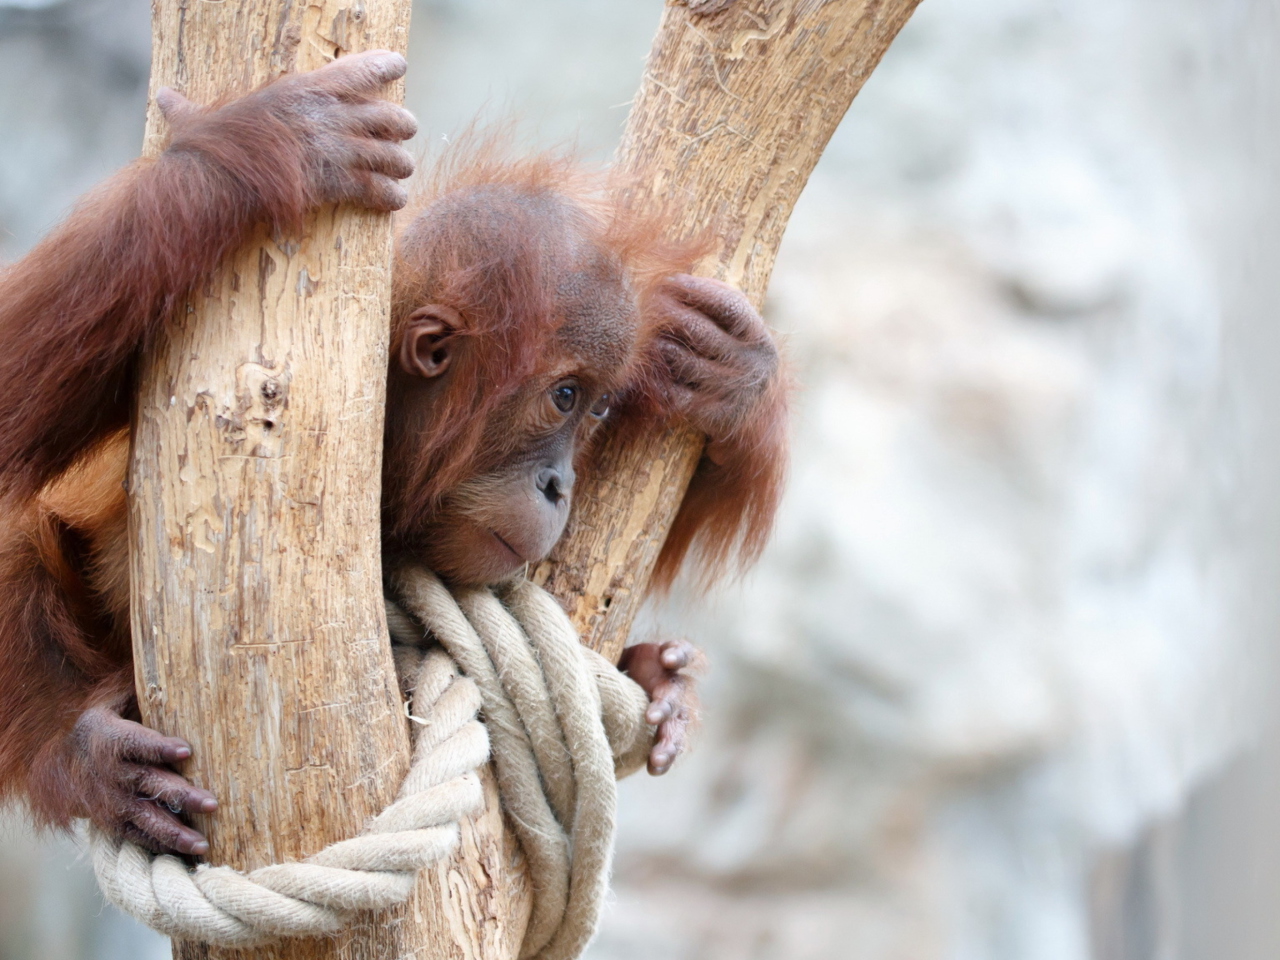 Обои Cute Little Monkey In Zoo 1280x960